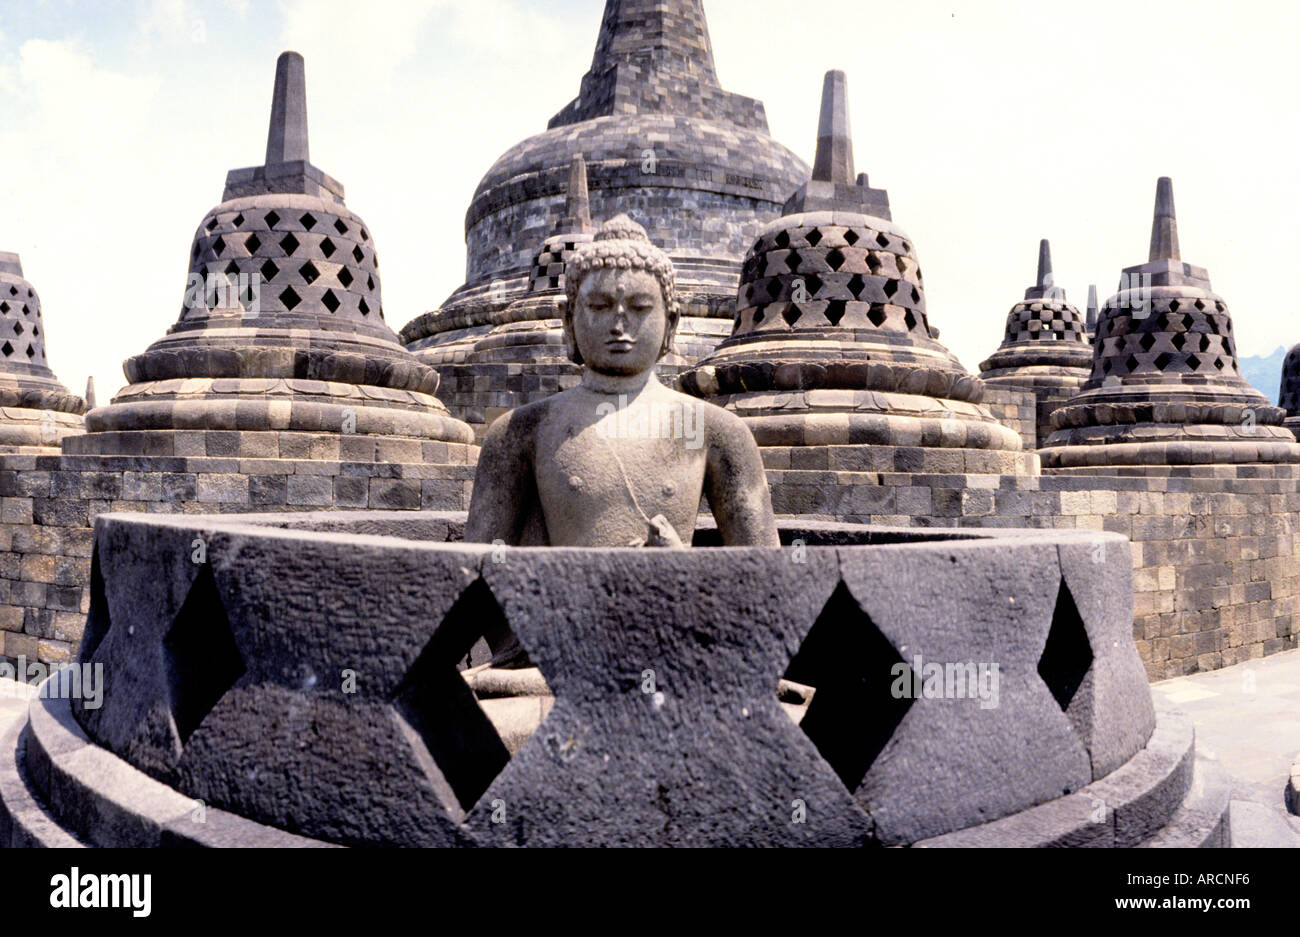 Java Indonesia Borobudur Buddhist Stupa Temple art Stock Photo